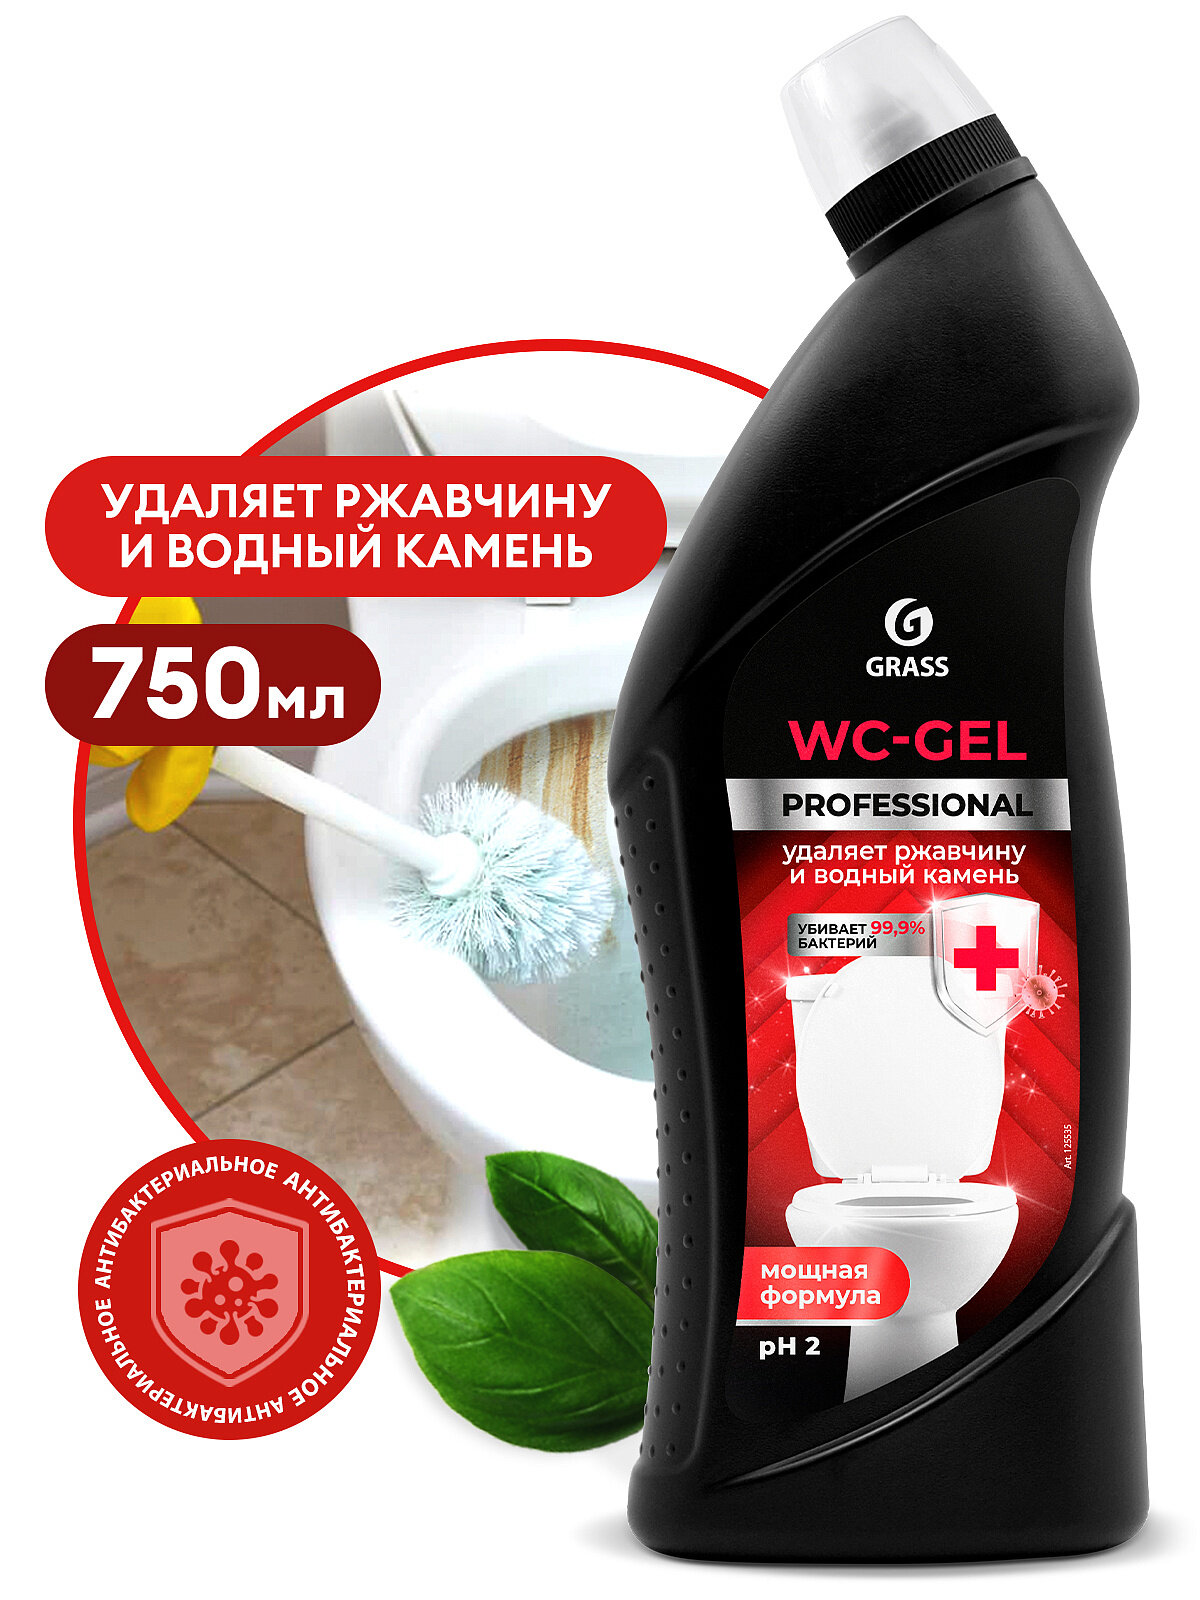 Очиститель для сан. узлов, Grass, 125535, WC-Gel Professional, 750 мл.